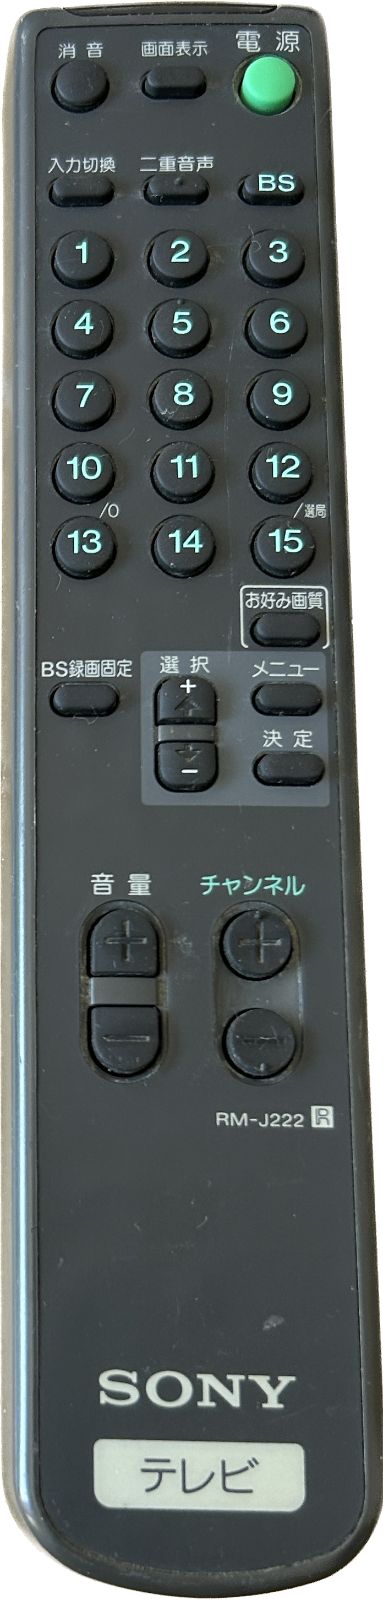 SONY テレビ リモコン RM-J222 ソニー - MH2オンラインストア - メルカリ